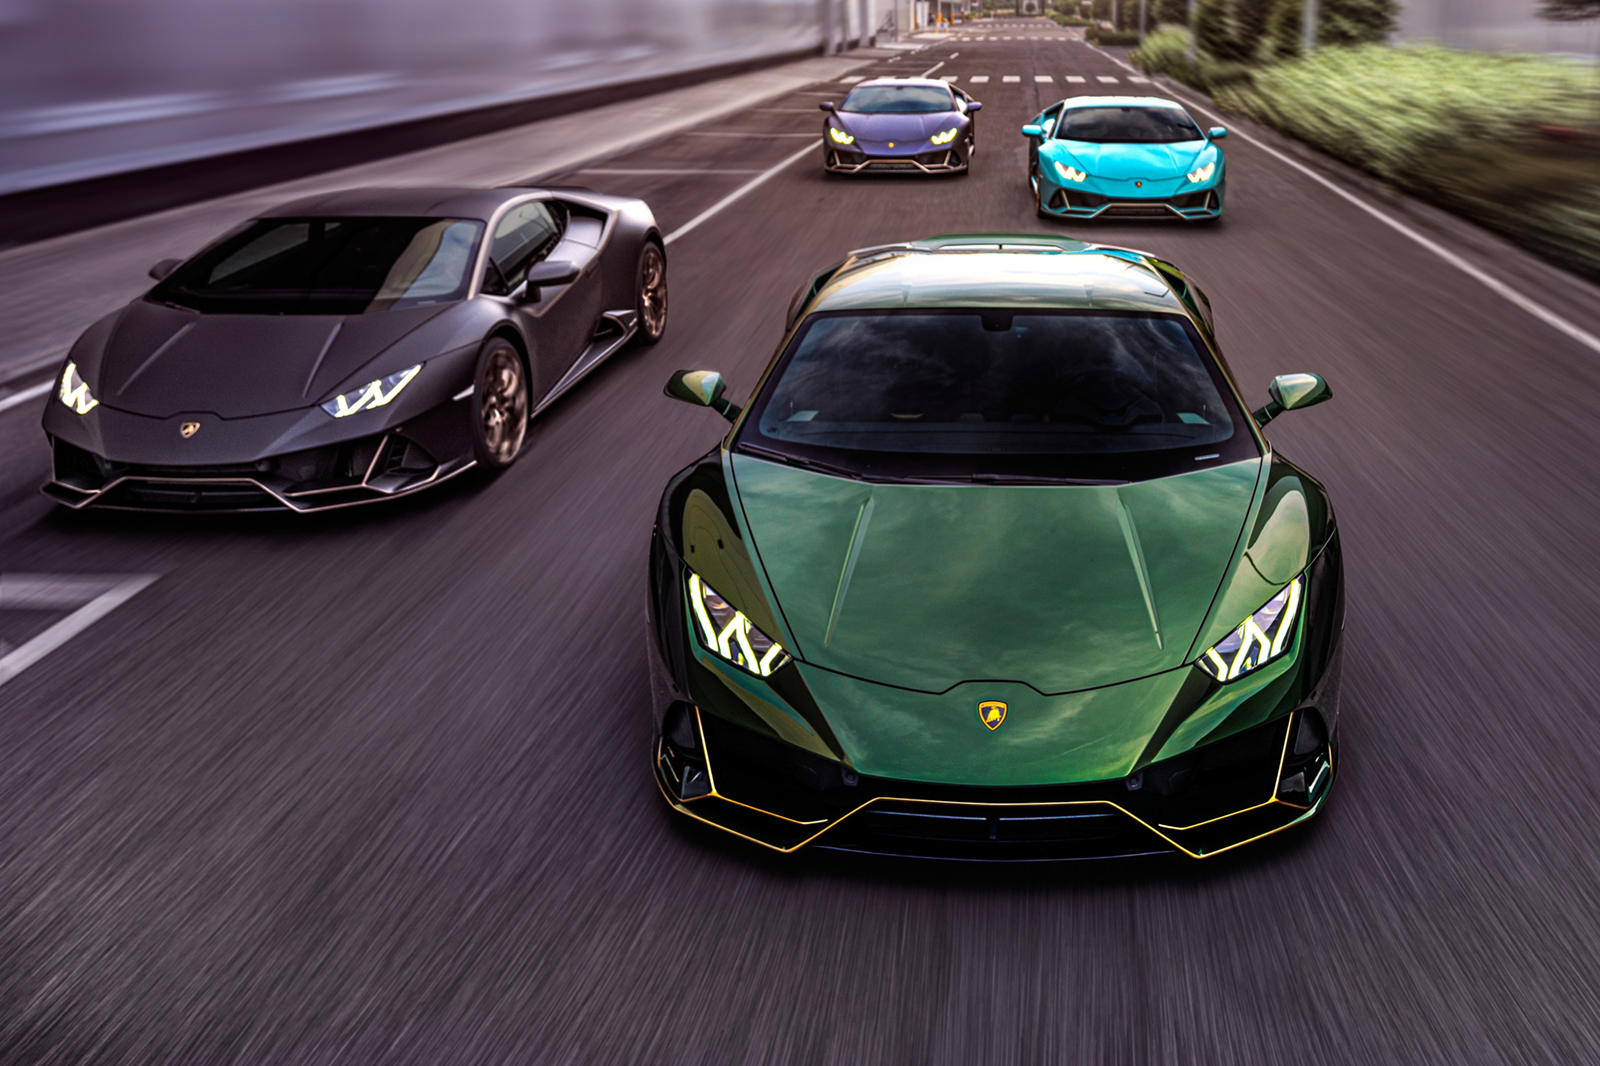 Автомобили Lamborghini любят и продают во всем мире. Этот итальянский производитель суперкаров работает уже почти шестьдесят лет и в 2021 году отпраздновал несколько довольно больших юбилеев. В настоящее время бренд отмечает 50-летие одной из своих с